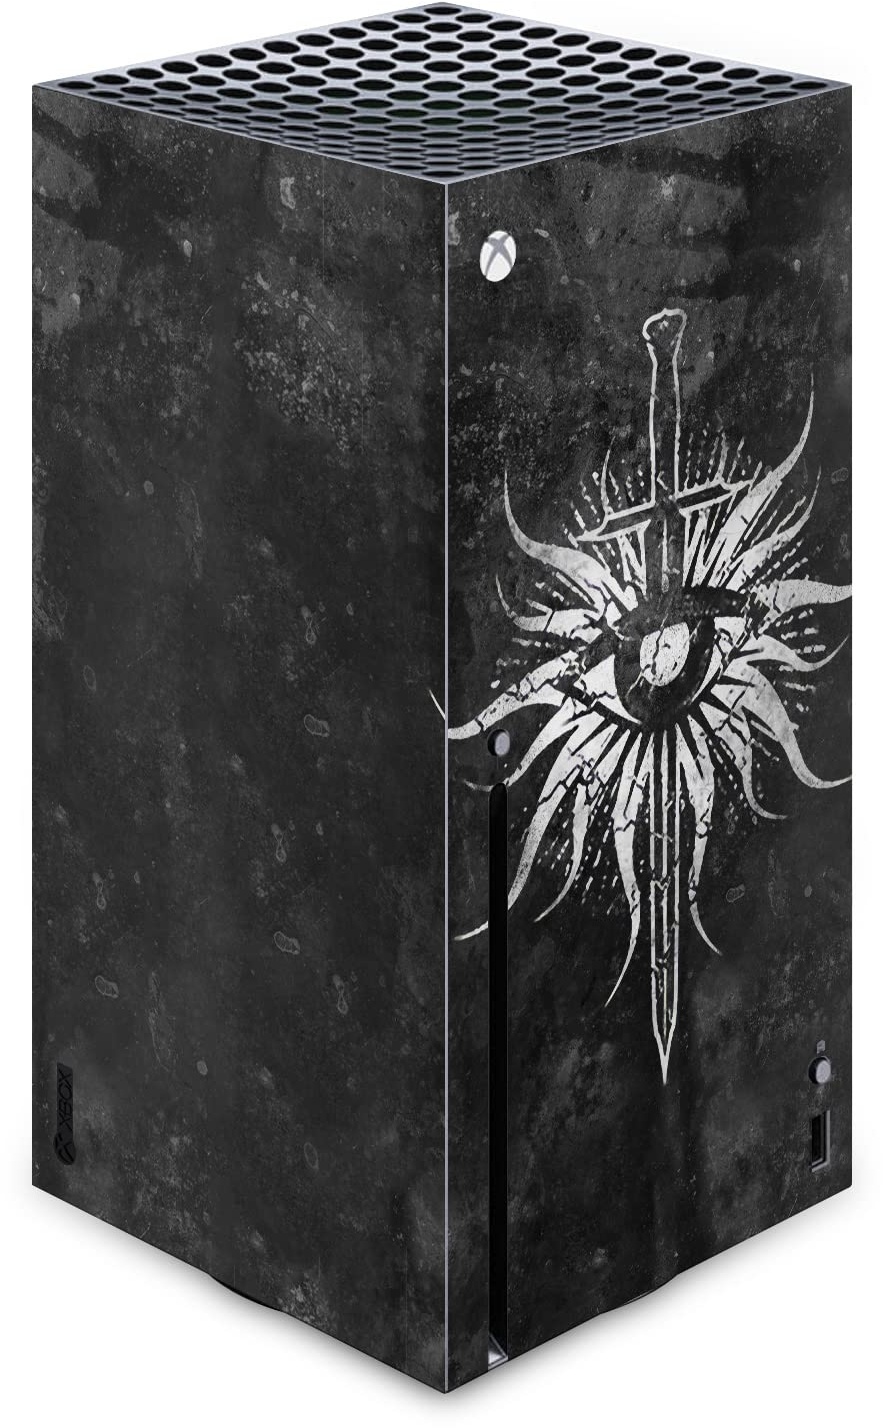 Head Case Designs Offizielle EA Bioware Dragon Age Verzweifelt Inquisition Heraldry Vinyl Haut Gaming Aufkleber Abziehbild Abdeckung kompatibel mit Xbox Series X Console